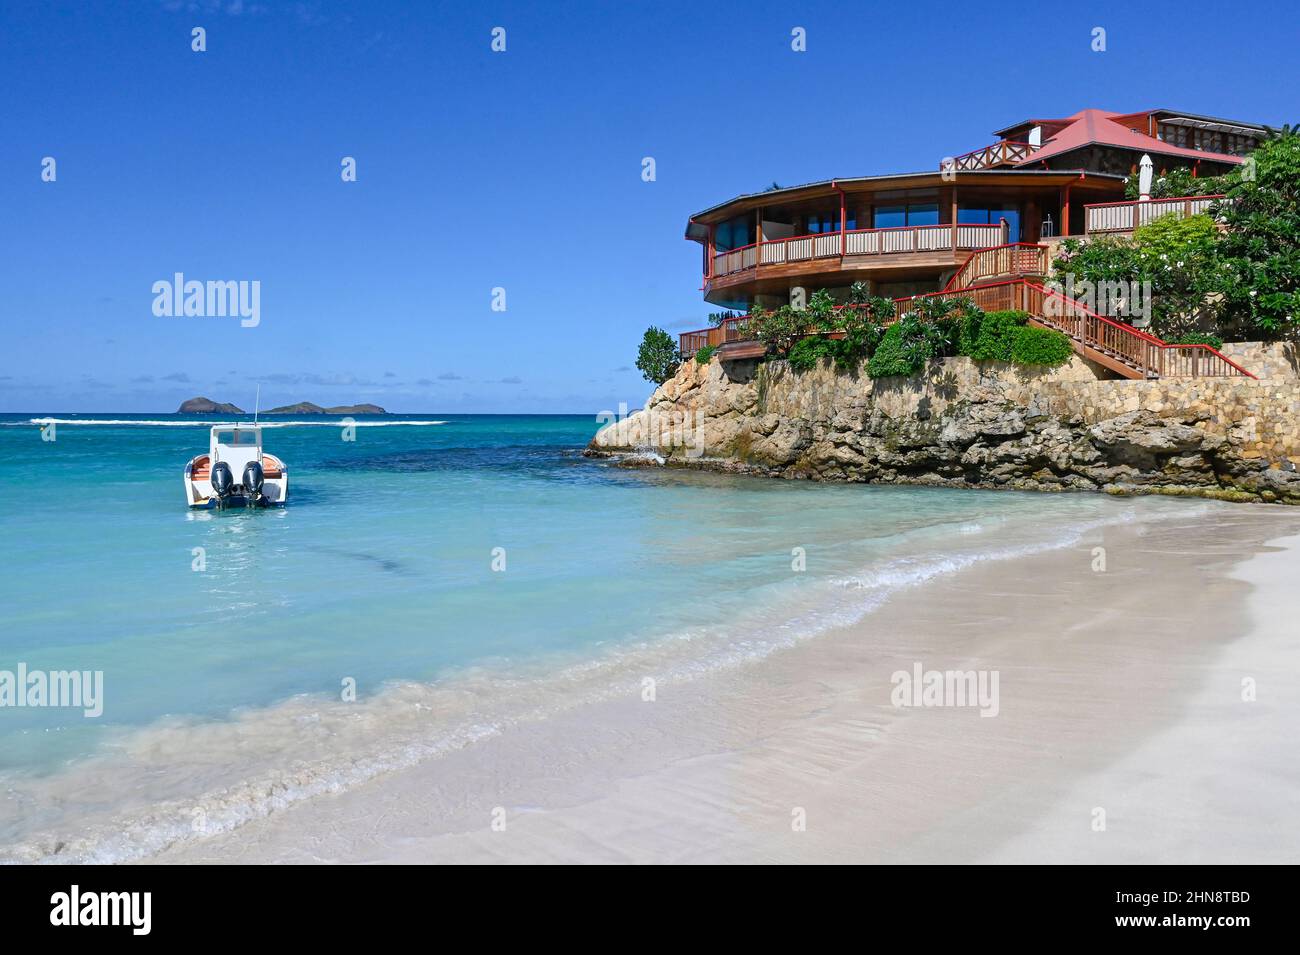 L'hôtel Eden Rock à la baie de Saint-Jean sur l'île des Caraïbes de Saint-Barthélemy (St Barths) dans les Antilles françaises Banque D'Images